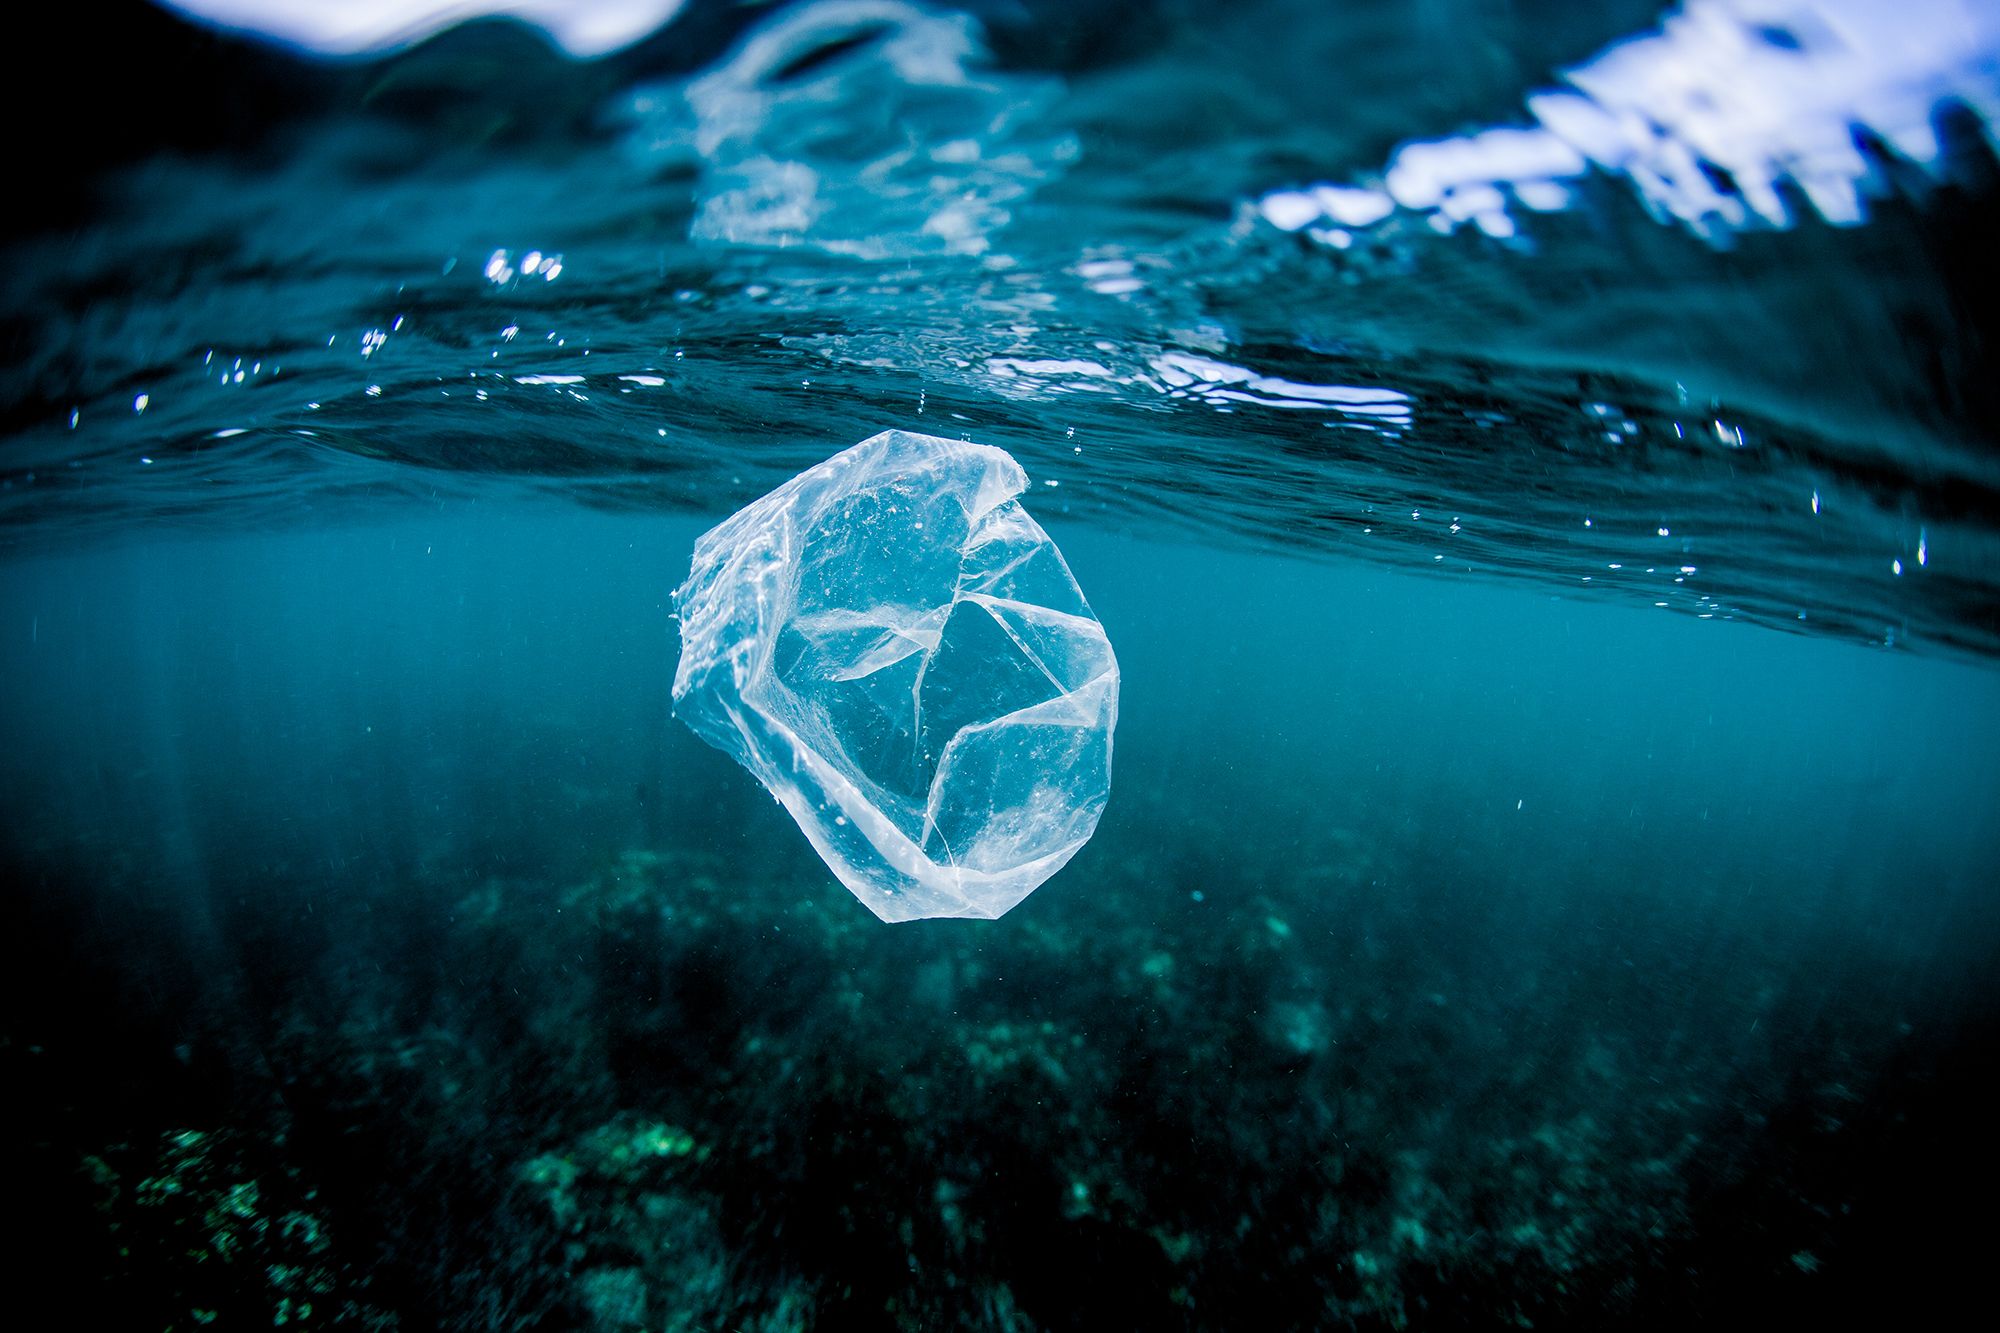 bolsa de plástico flotando en el oceano